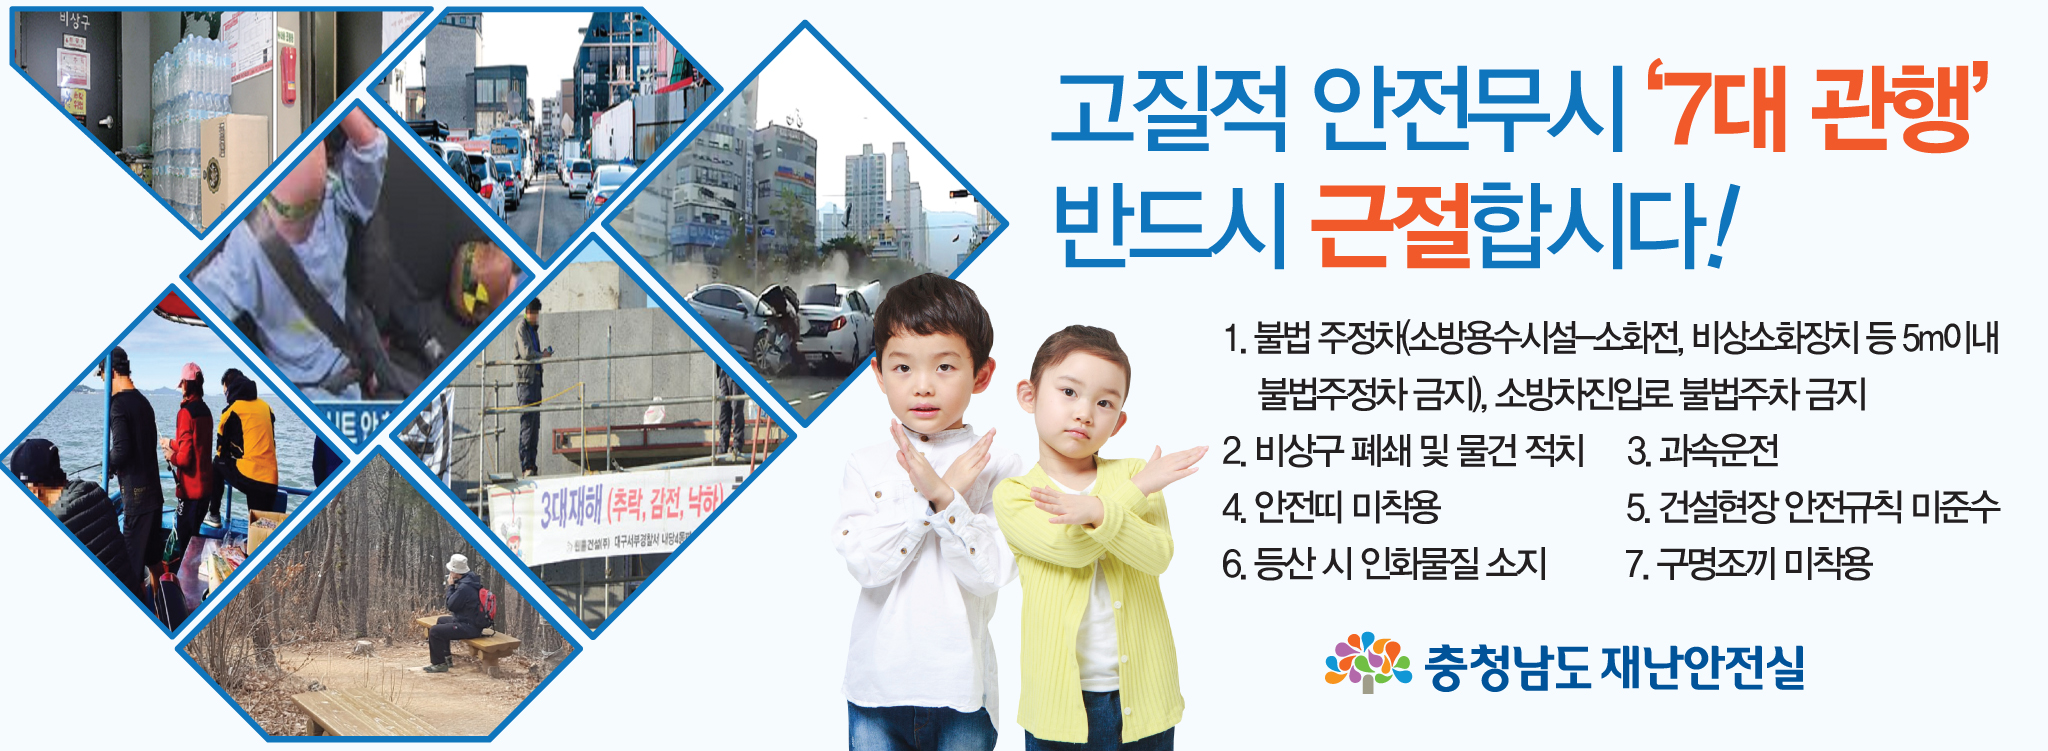 사본 -고질적 안전무시 7대관행 근절 광고.jpg